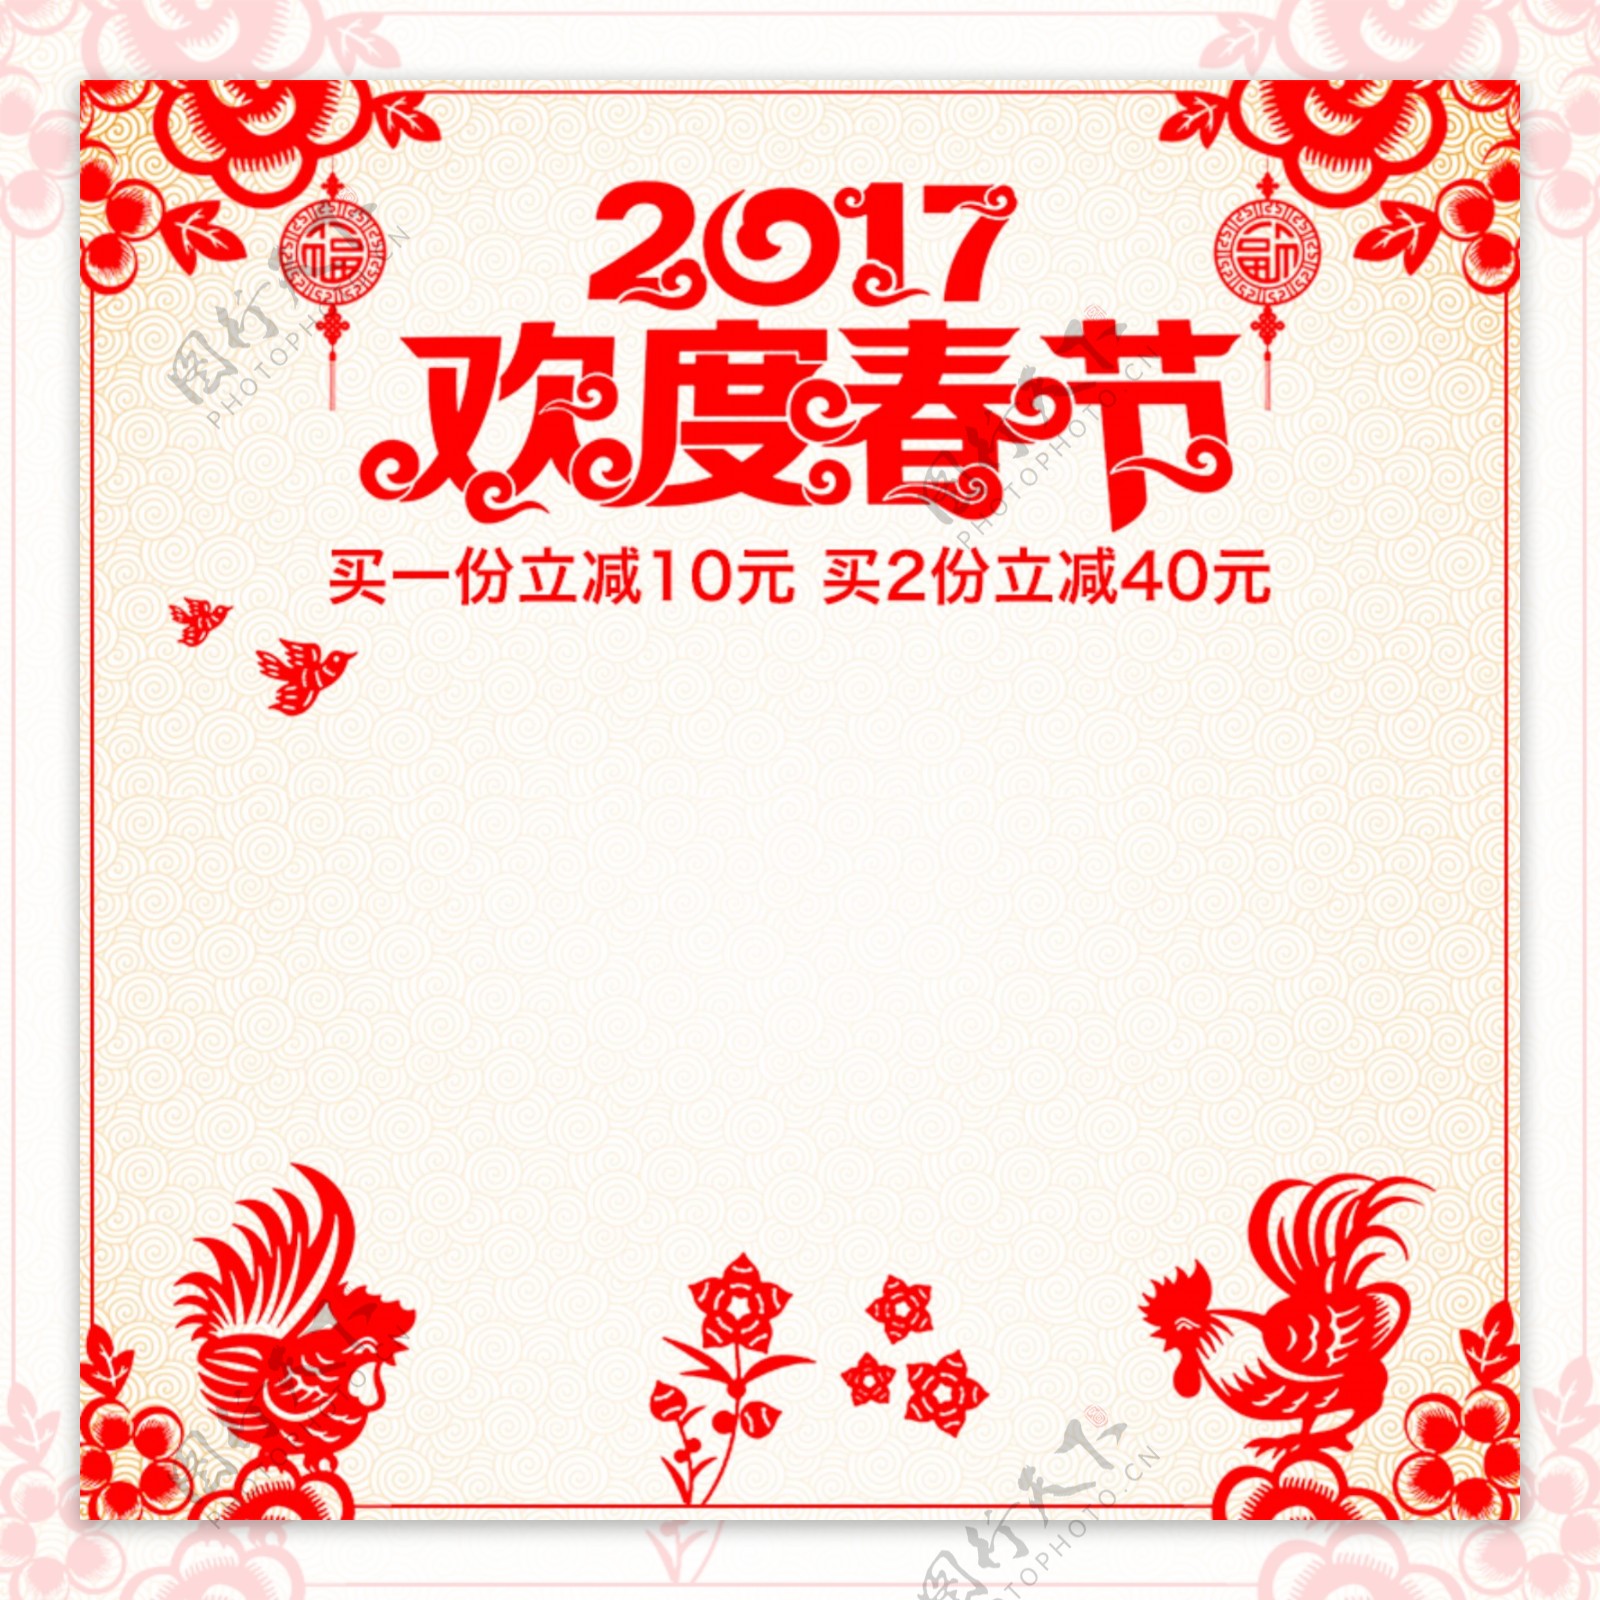 2017年春节剪纸主图直通车年货节主图